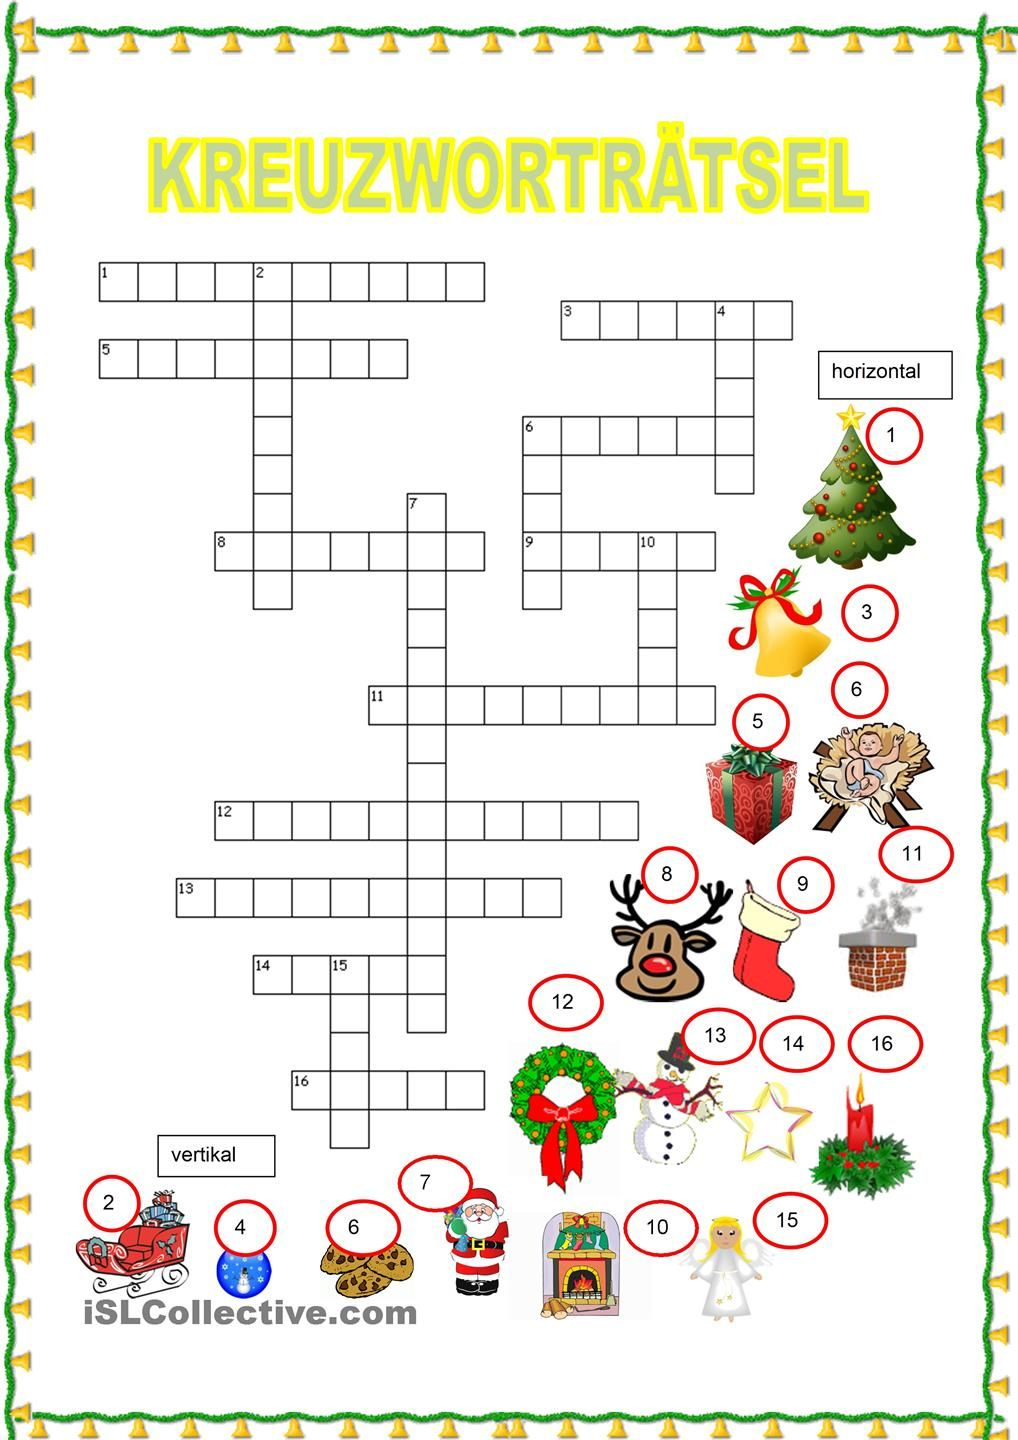 Kreuzworträtsel - Weihnachten (Mit Bildern) | Weihnachten mit Wörterrätsel Kostenlos Spielen